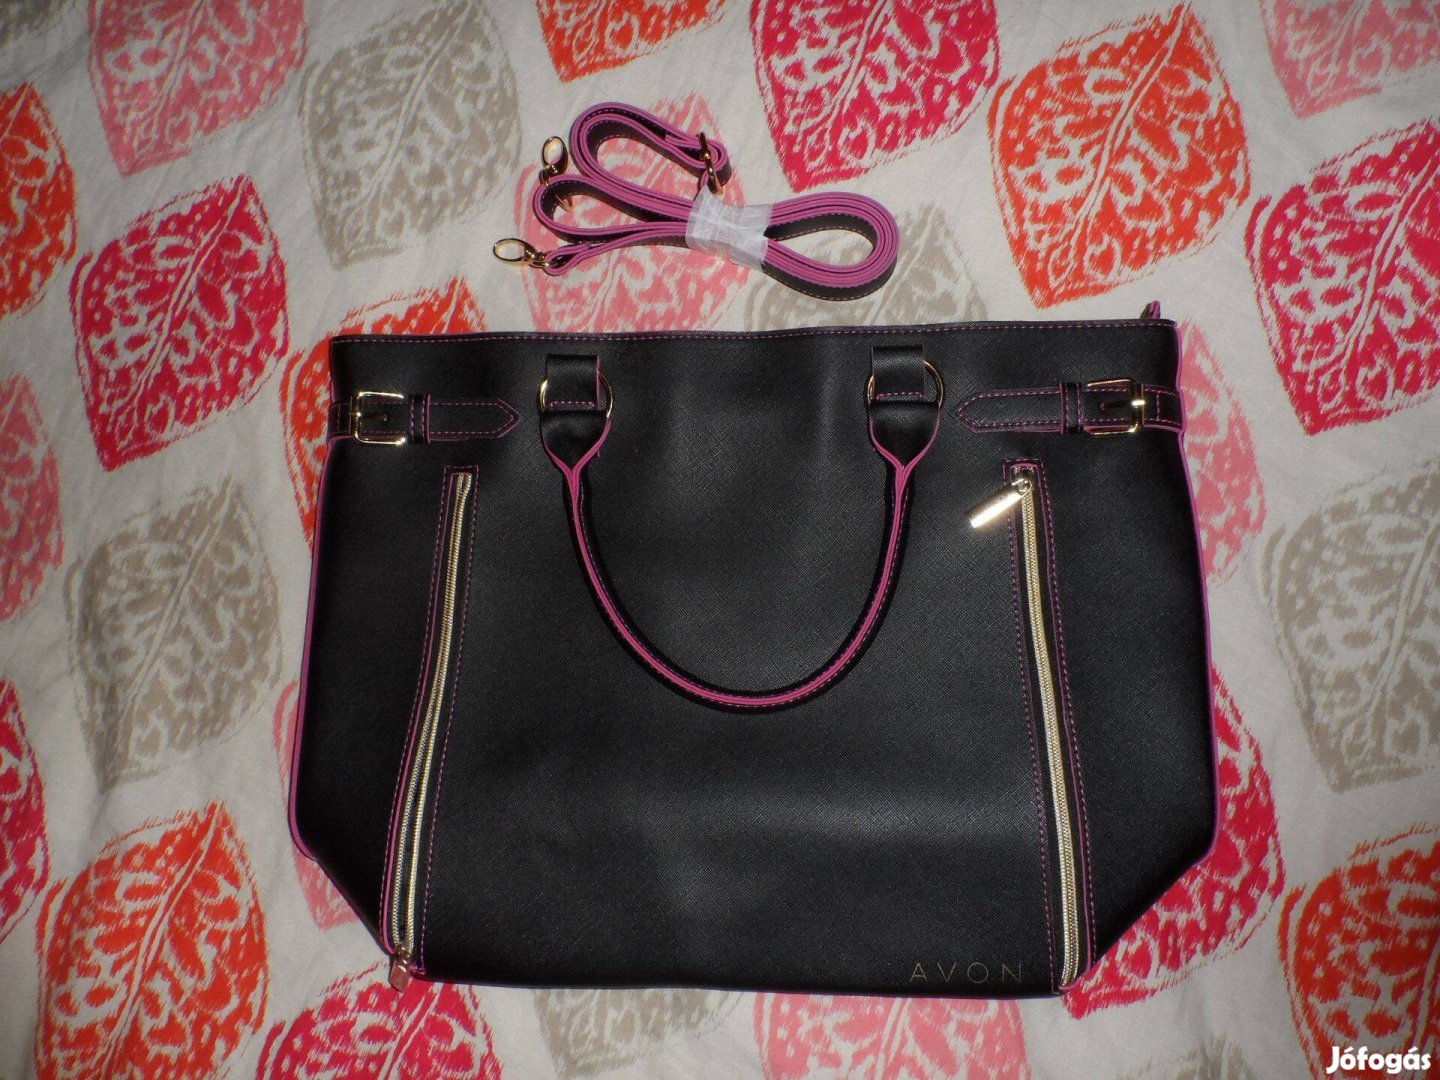 Fekete-pink pakolós táska